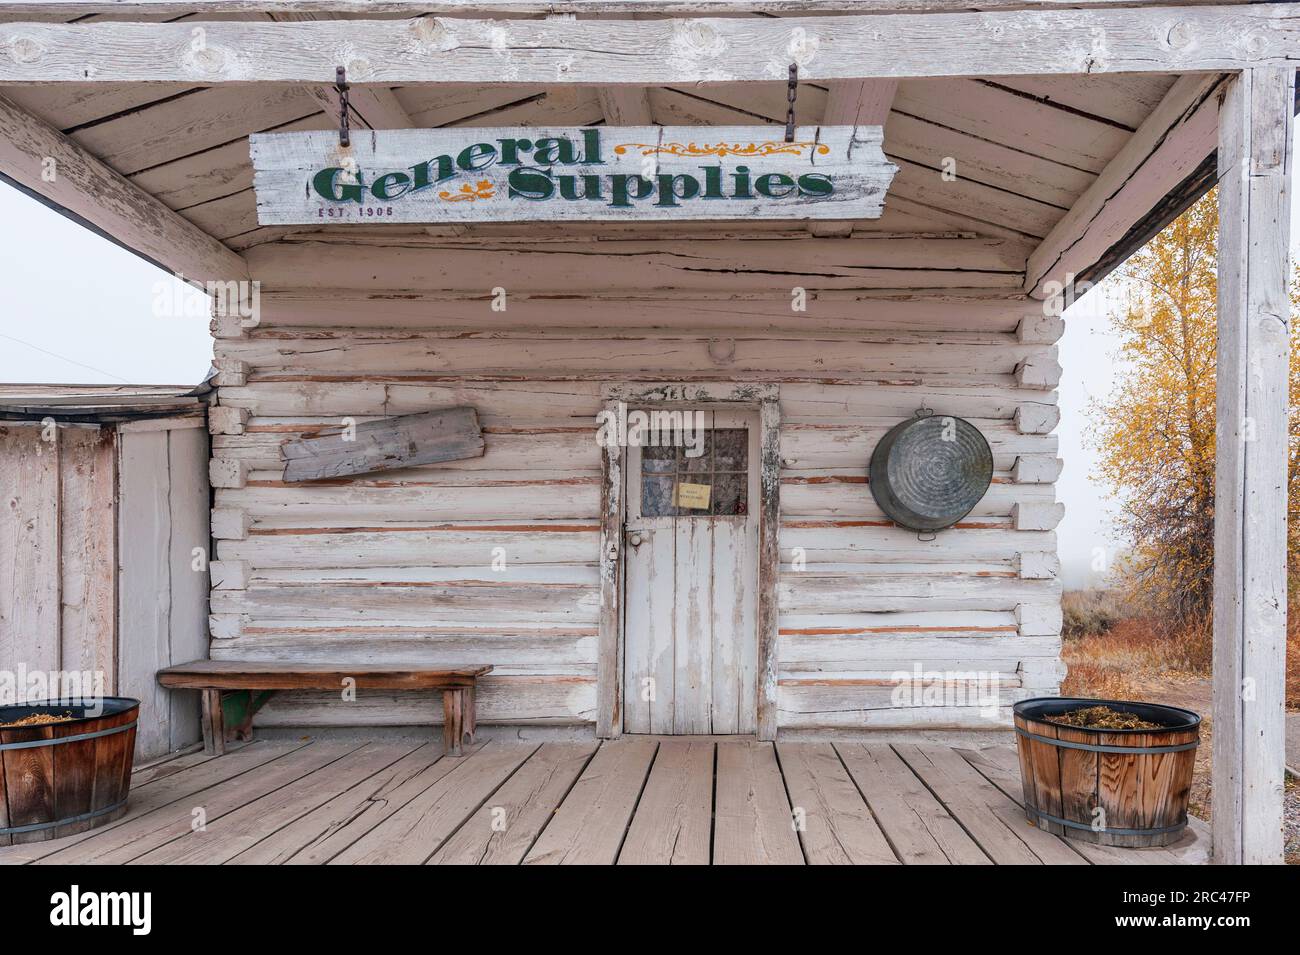 Almacén de Suministros generales en Ferry Menors distrito histórico, parque nacional Grand Teton, Wyoming, Estados Unidos Foto de stock